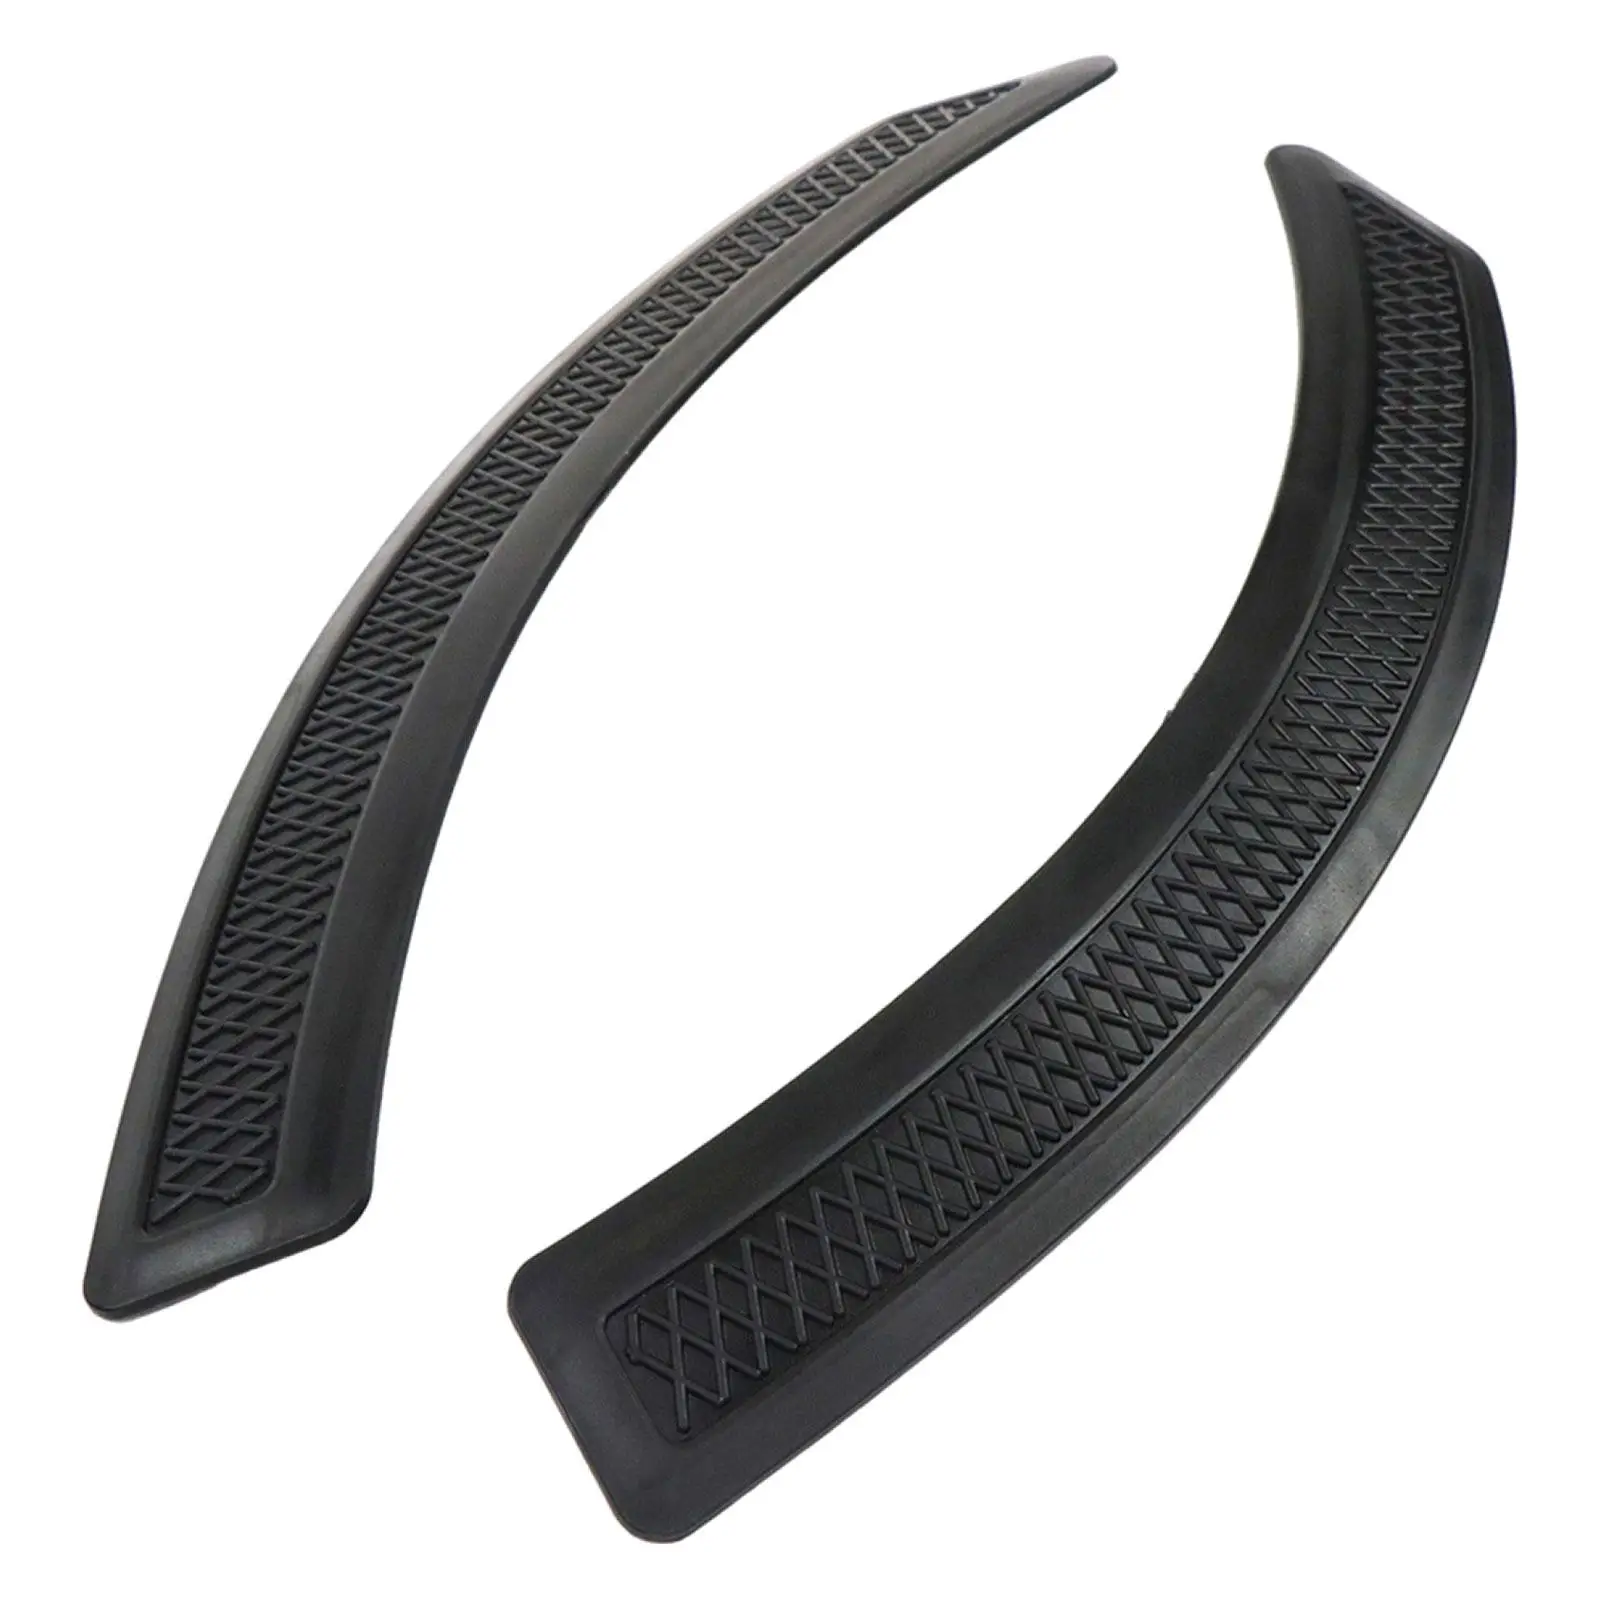 2 Pieces Car Wheel Tires Eyebrow Strip Durable Car Protection Decorative